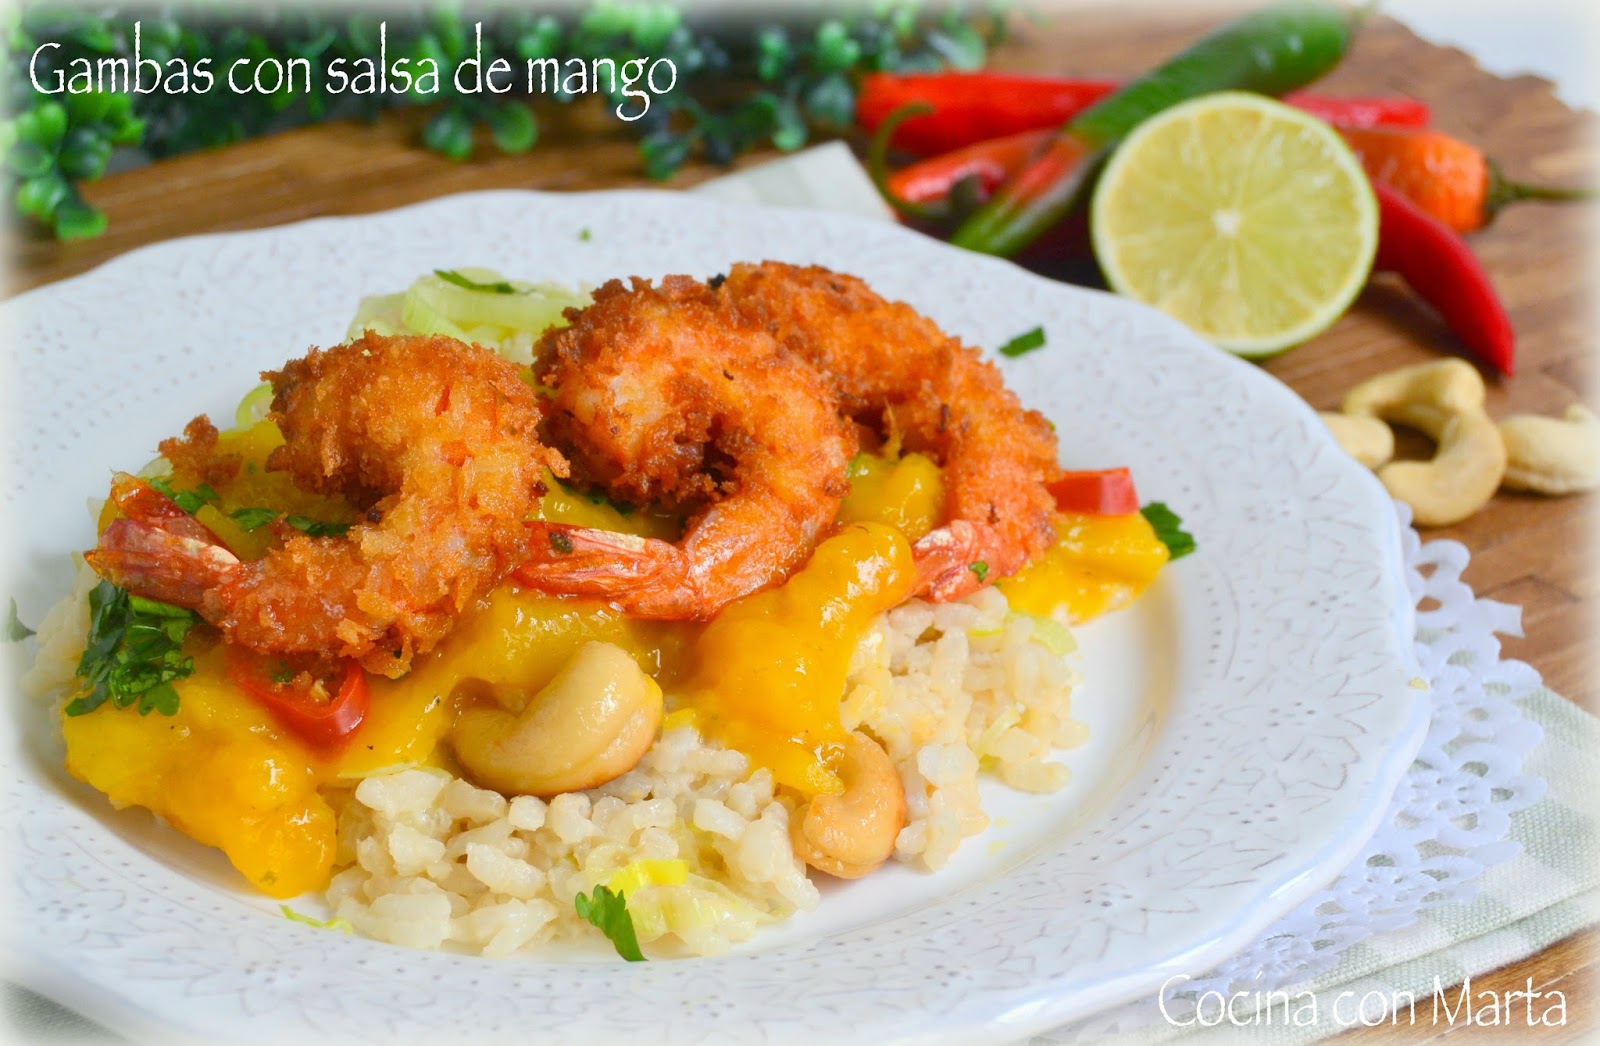 Receta de gambas o langostinos en salsa de mango, y arroz con leche de coco. Fácil, rápida y casera. Shrimp with Mango Sauce